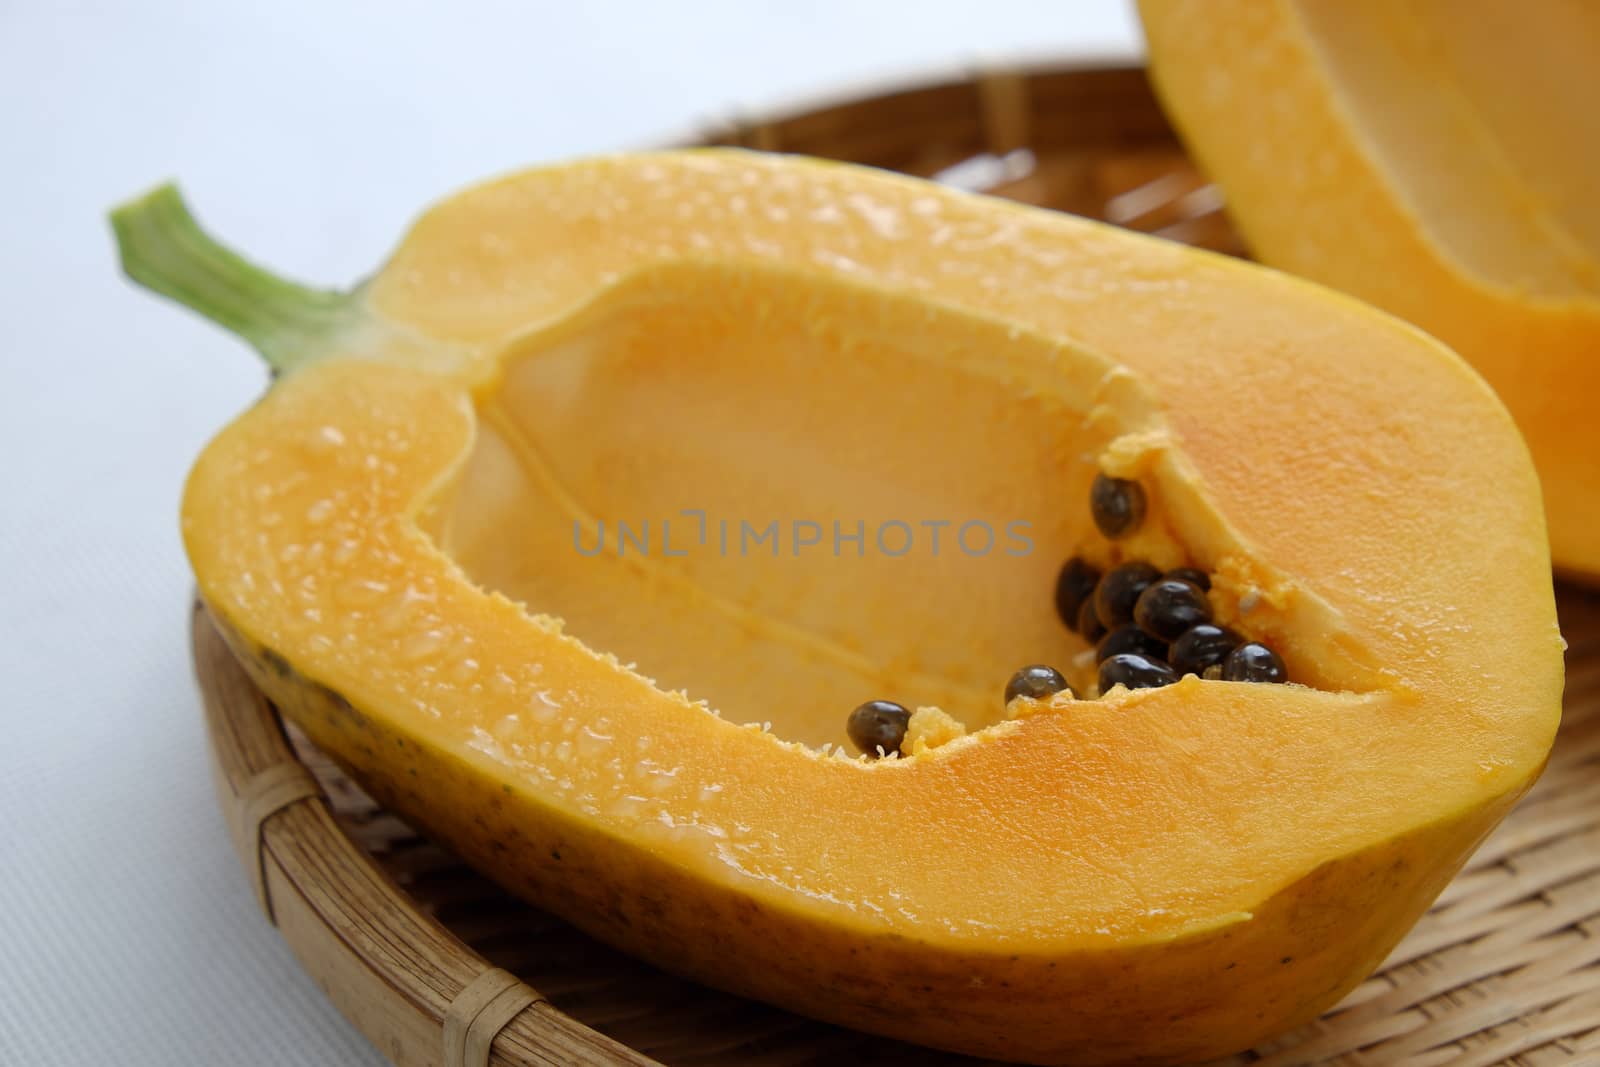 Papaya on white background, tropical fruit by xuanhuongho